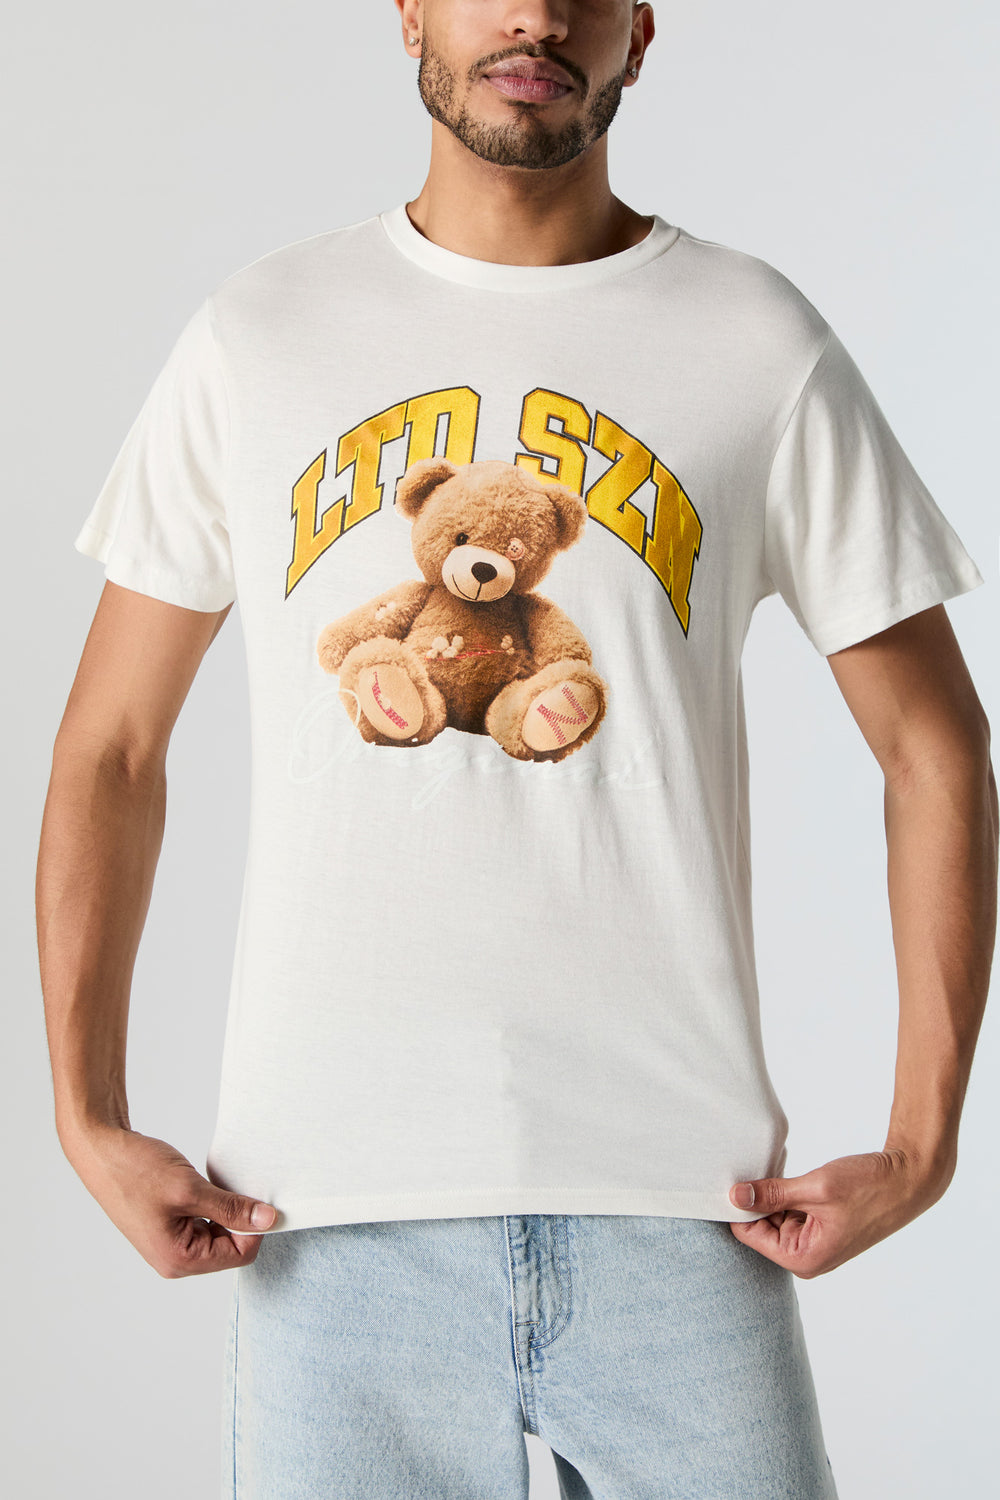 LTD Szn Graphic T-Shirt LTD Szn Graphic T-Shirt 1